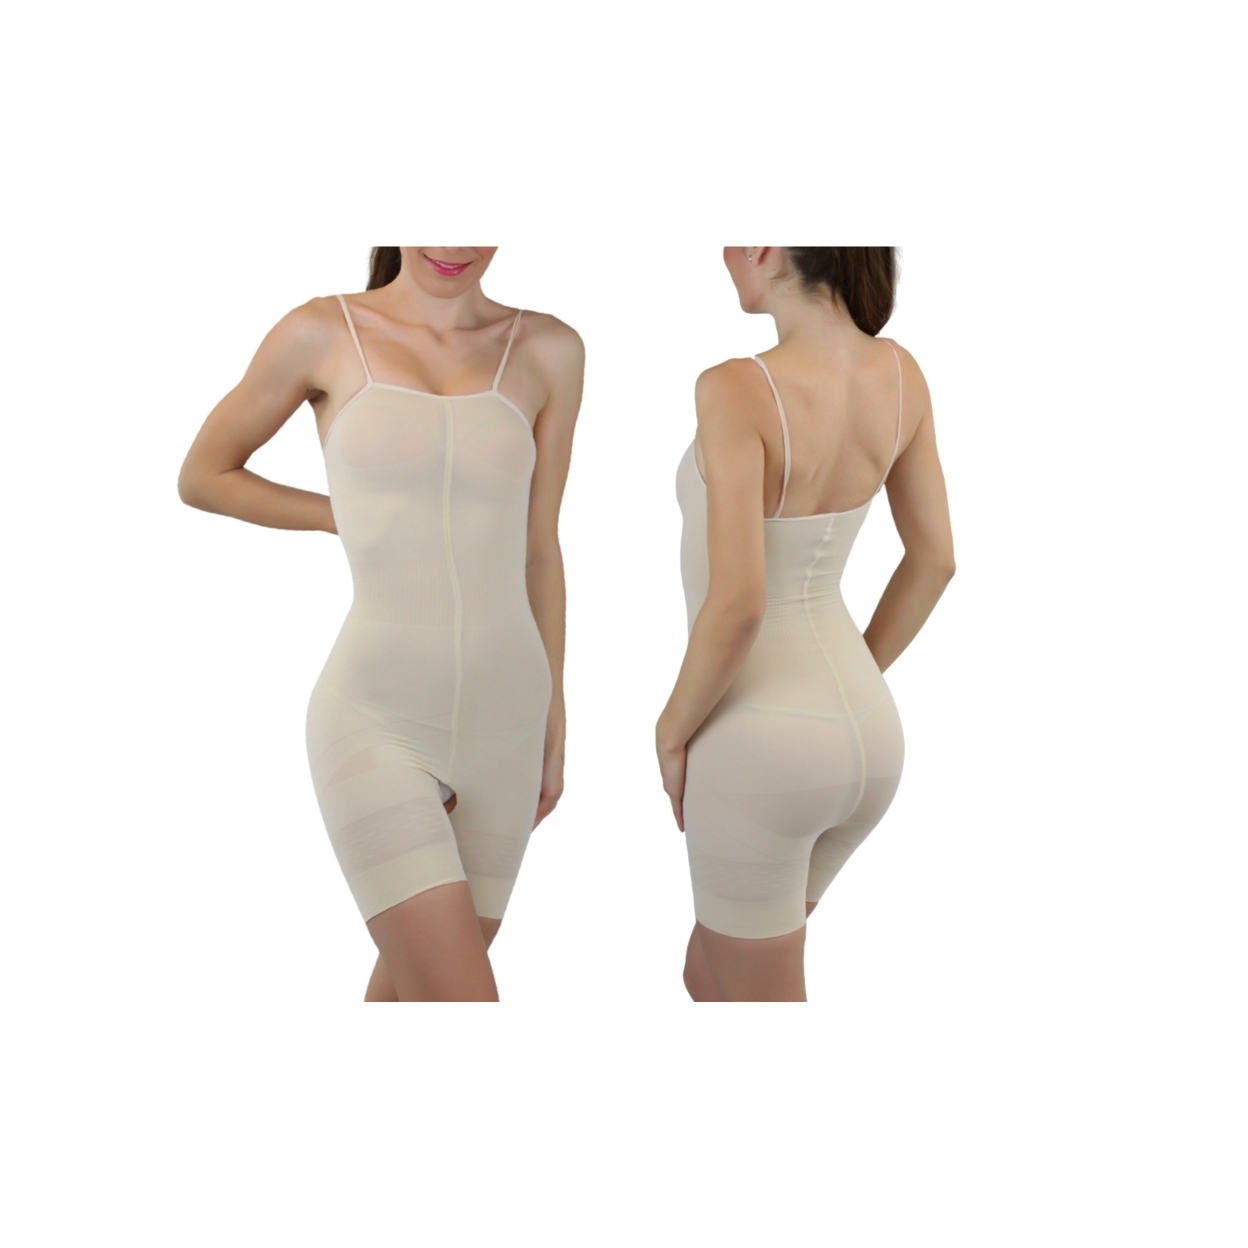 Women's Slimming Body Suit - Beige, M